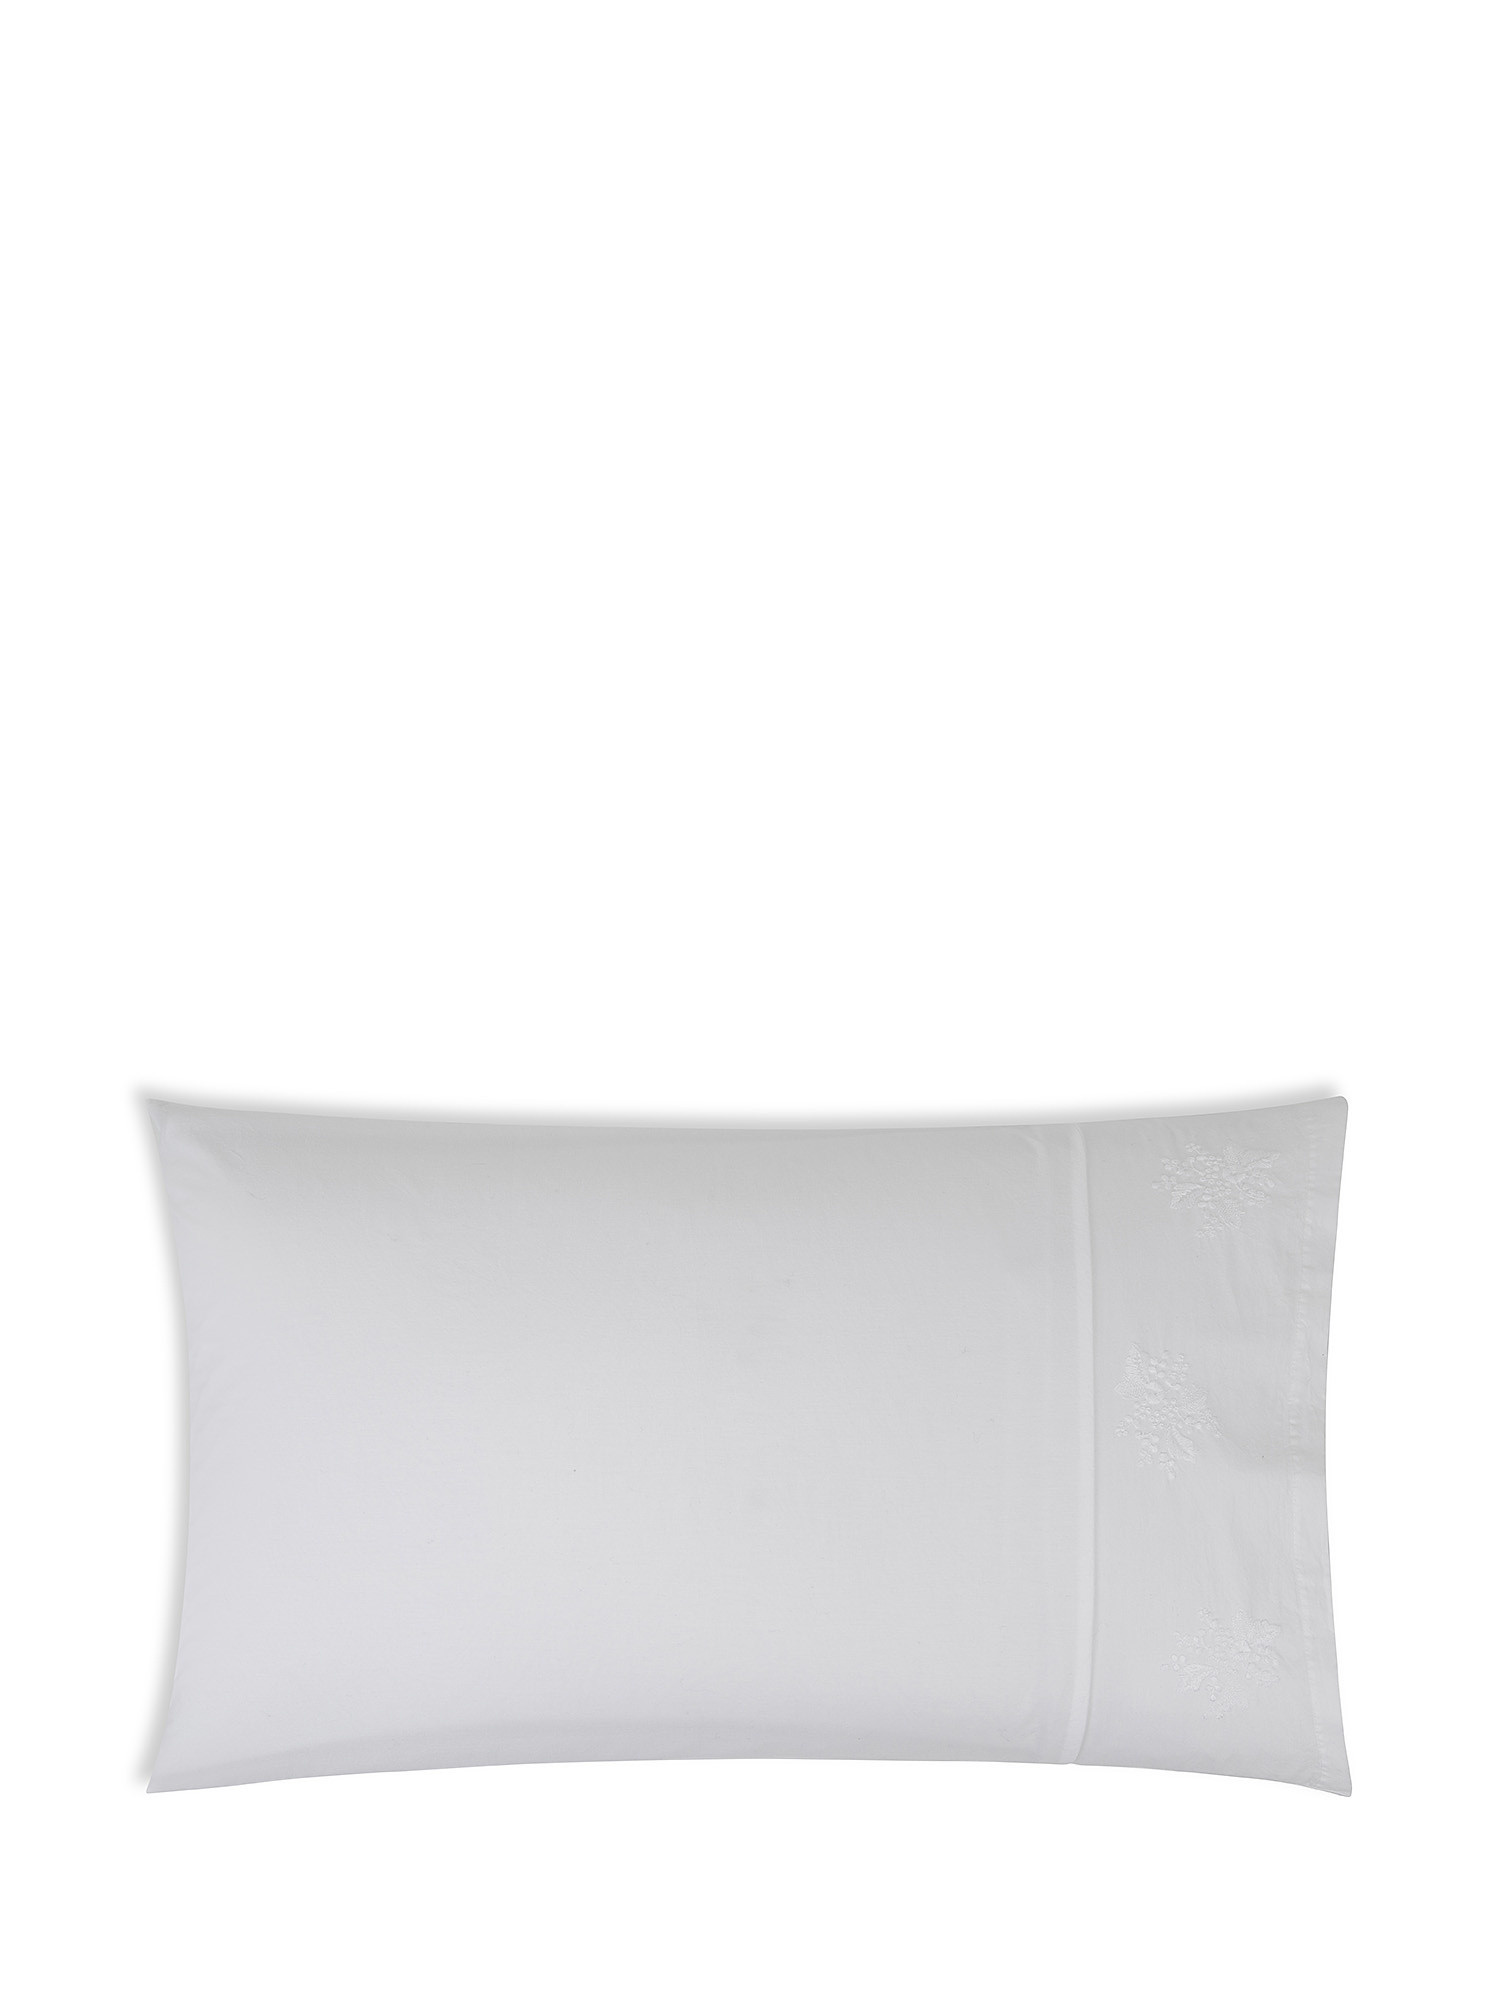 Federa cotone percalle con ricamo Portofino, Bianco, large image number 0